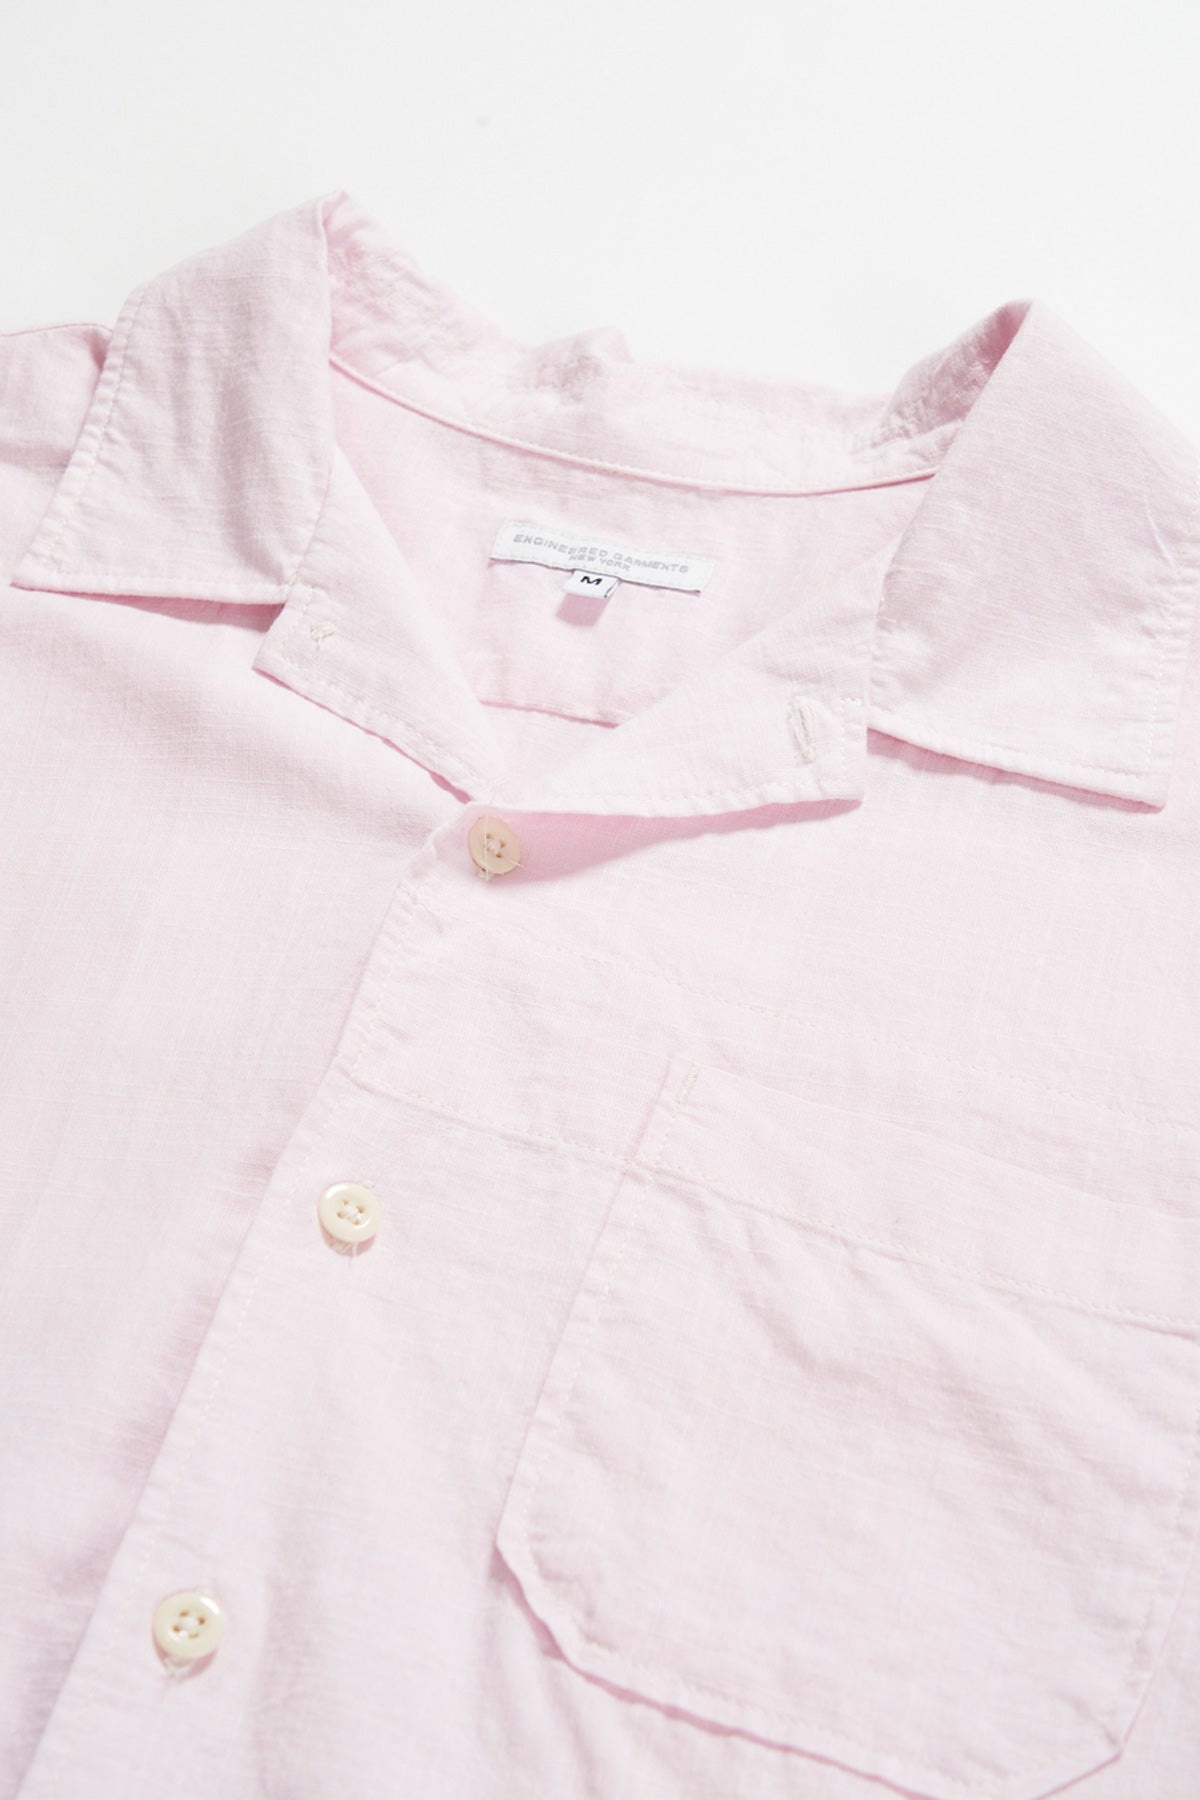 Camp Shirt - Pink Cotton Handkerchief - 3